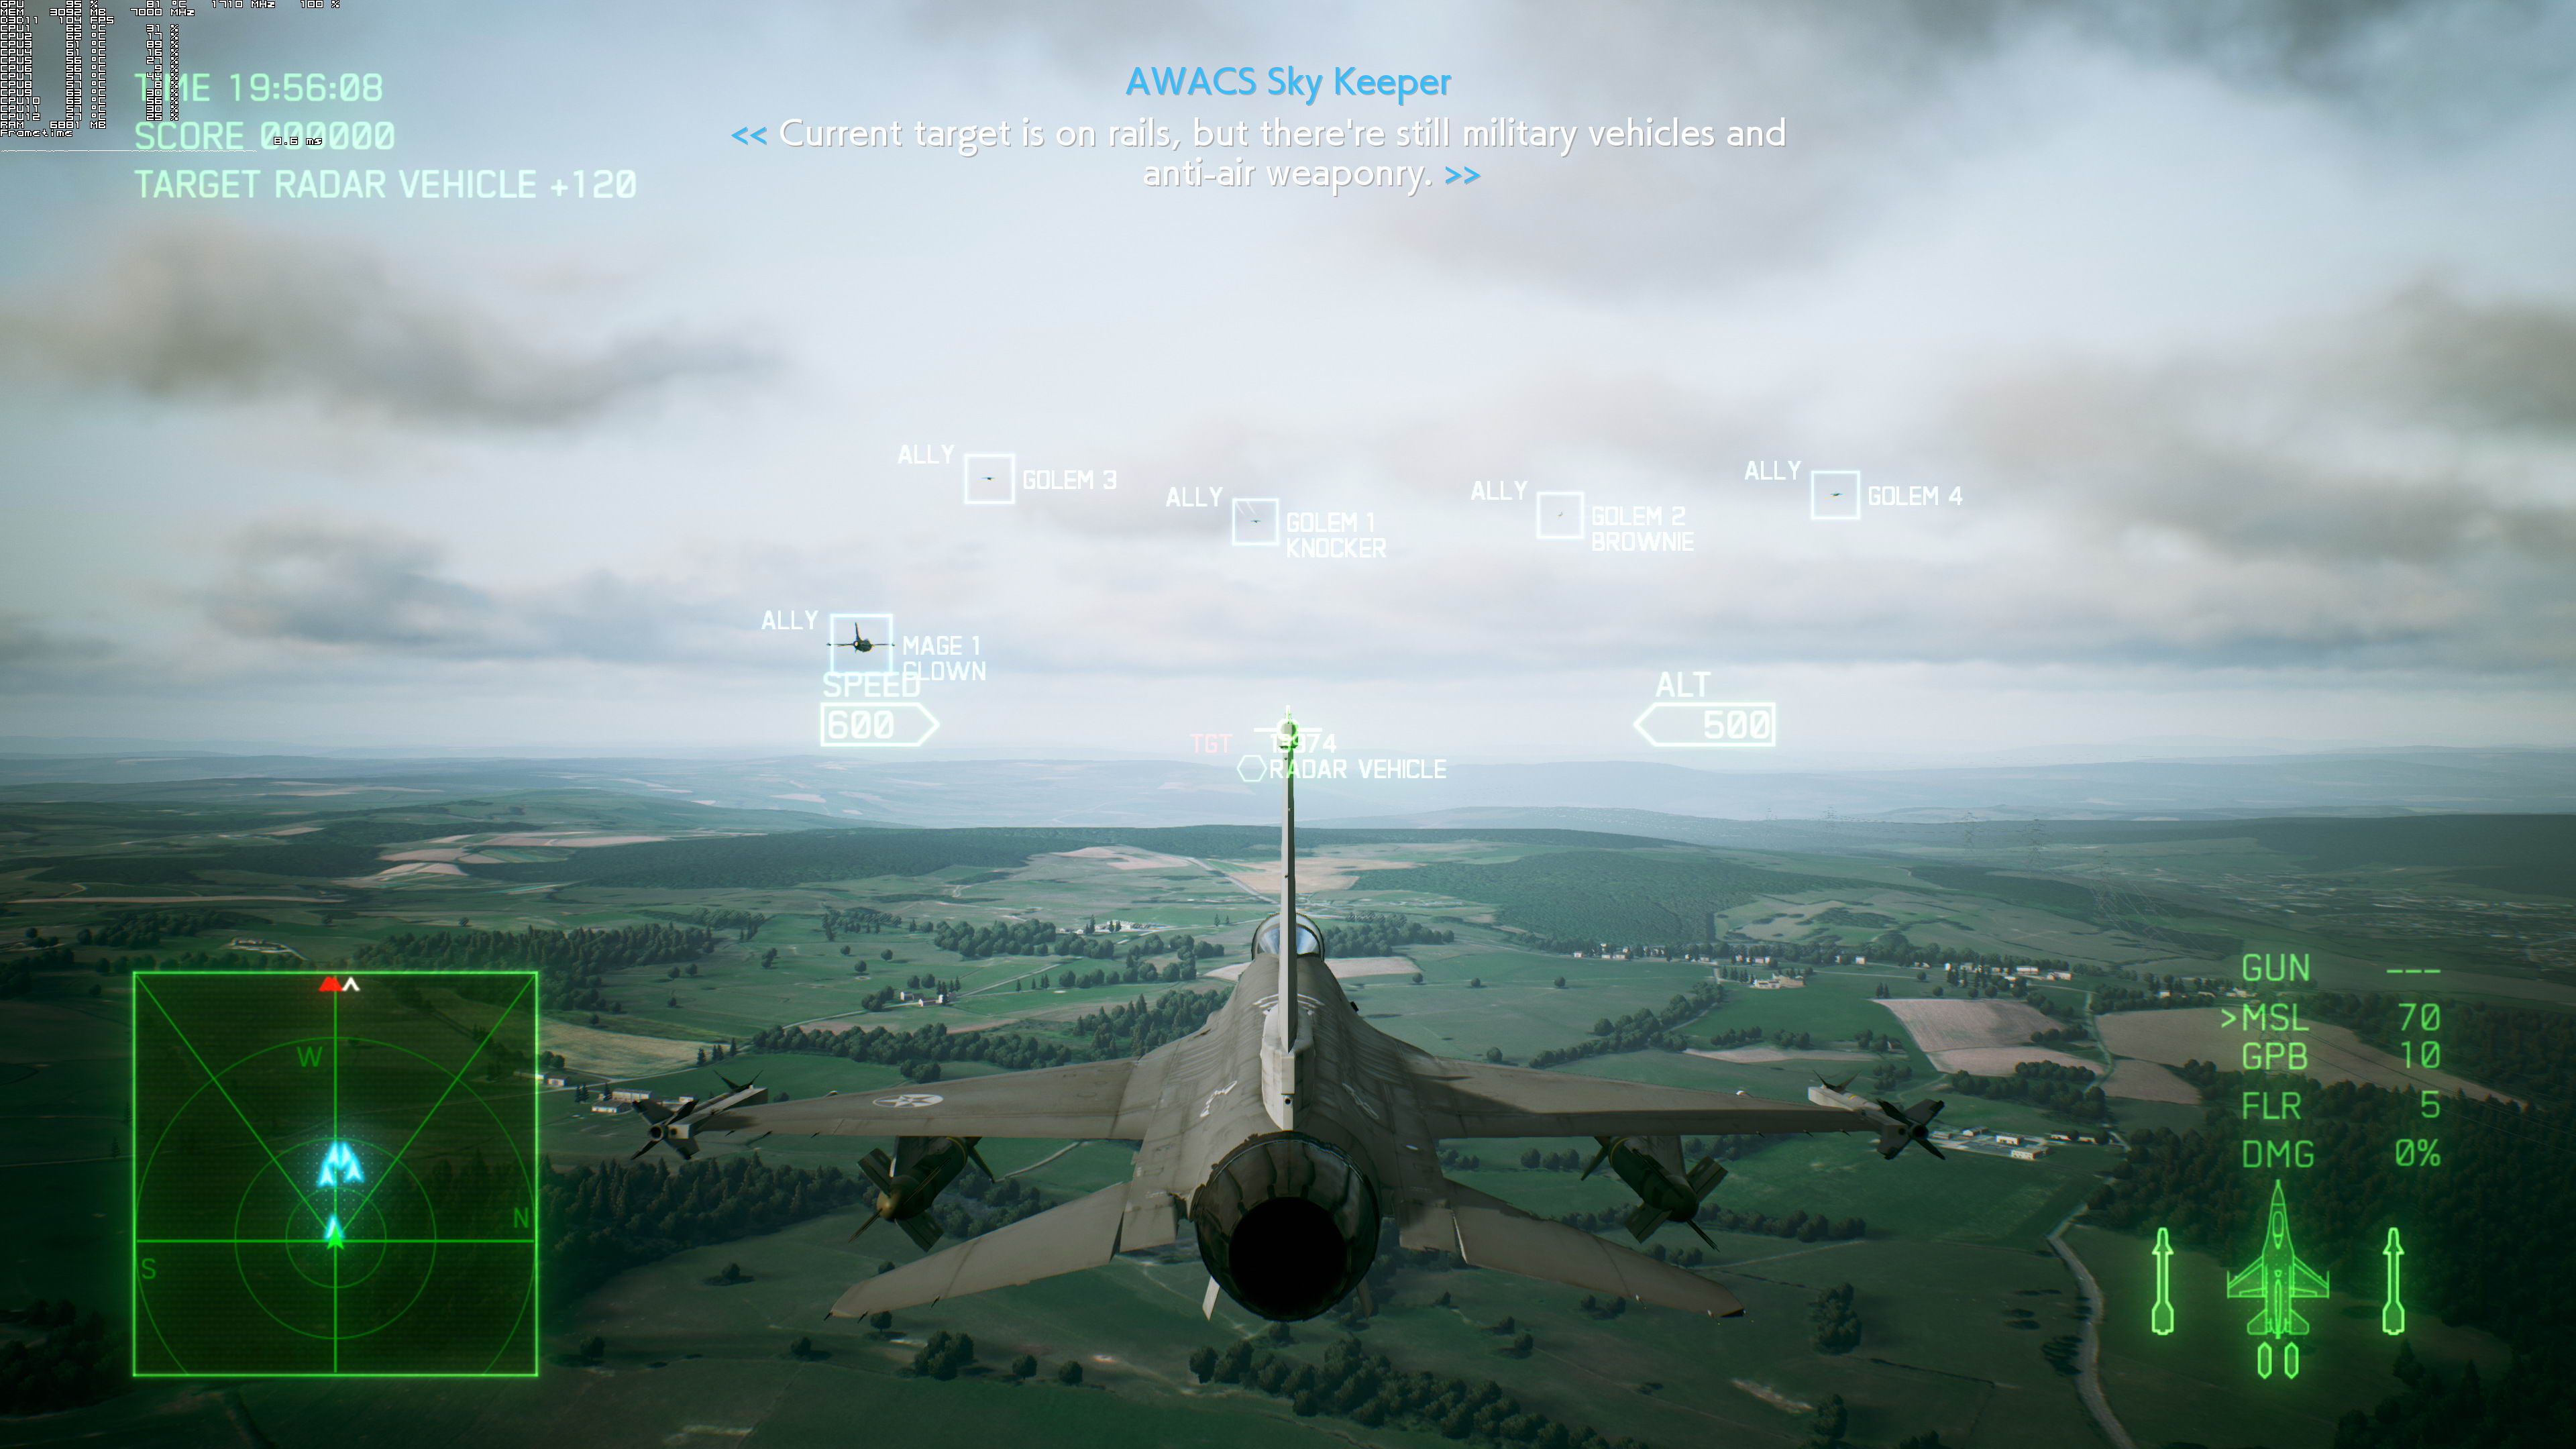 《空戰奇兵7》PC版測試截圖 2080Ti運行效果超神